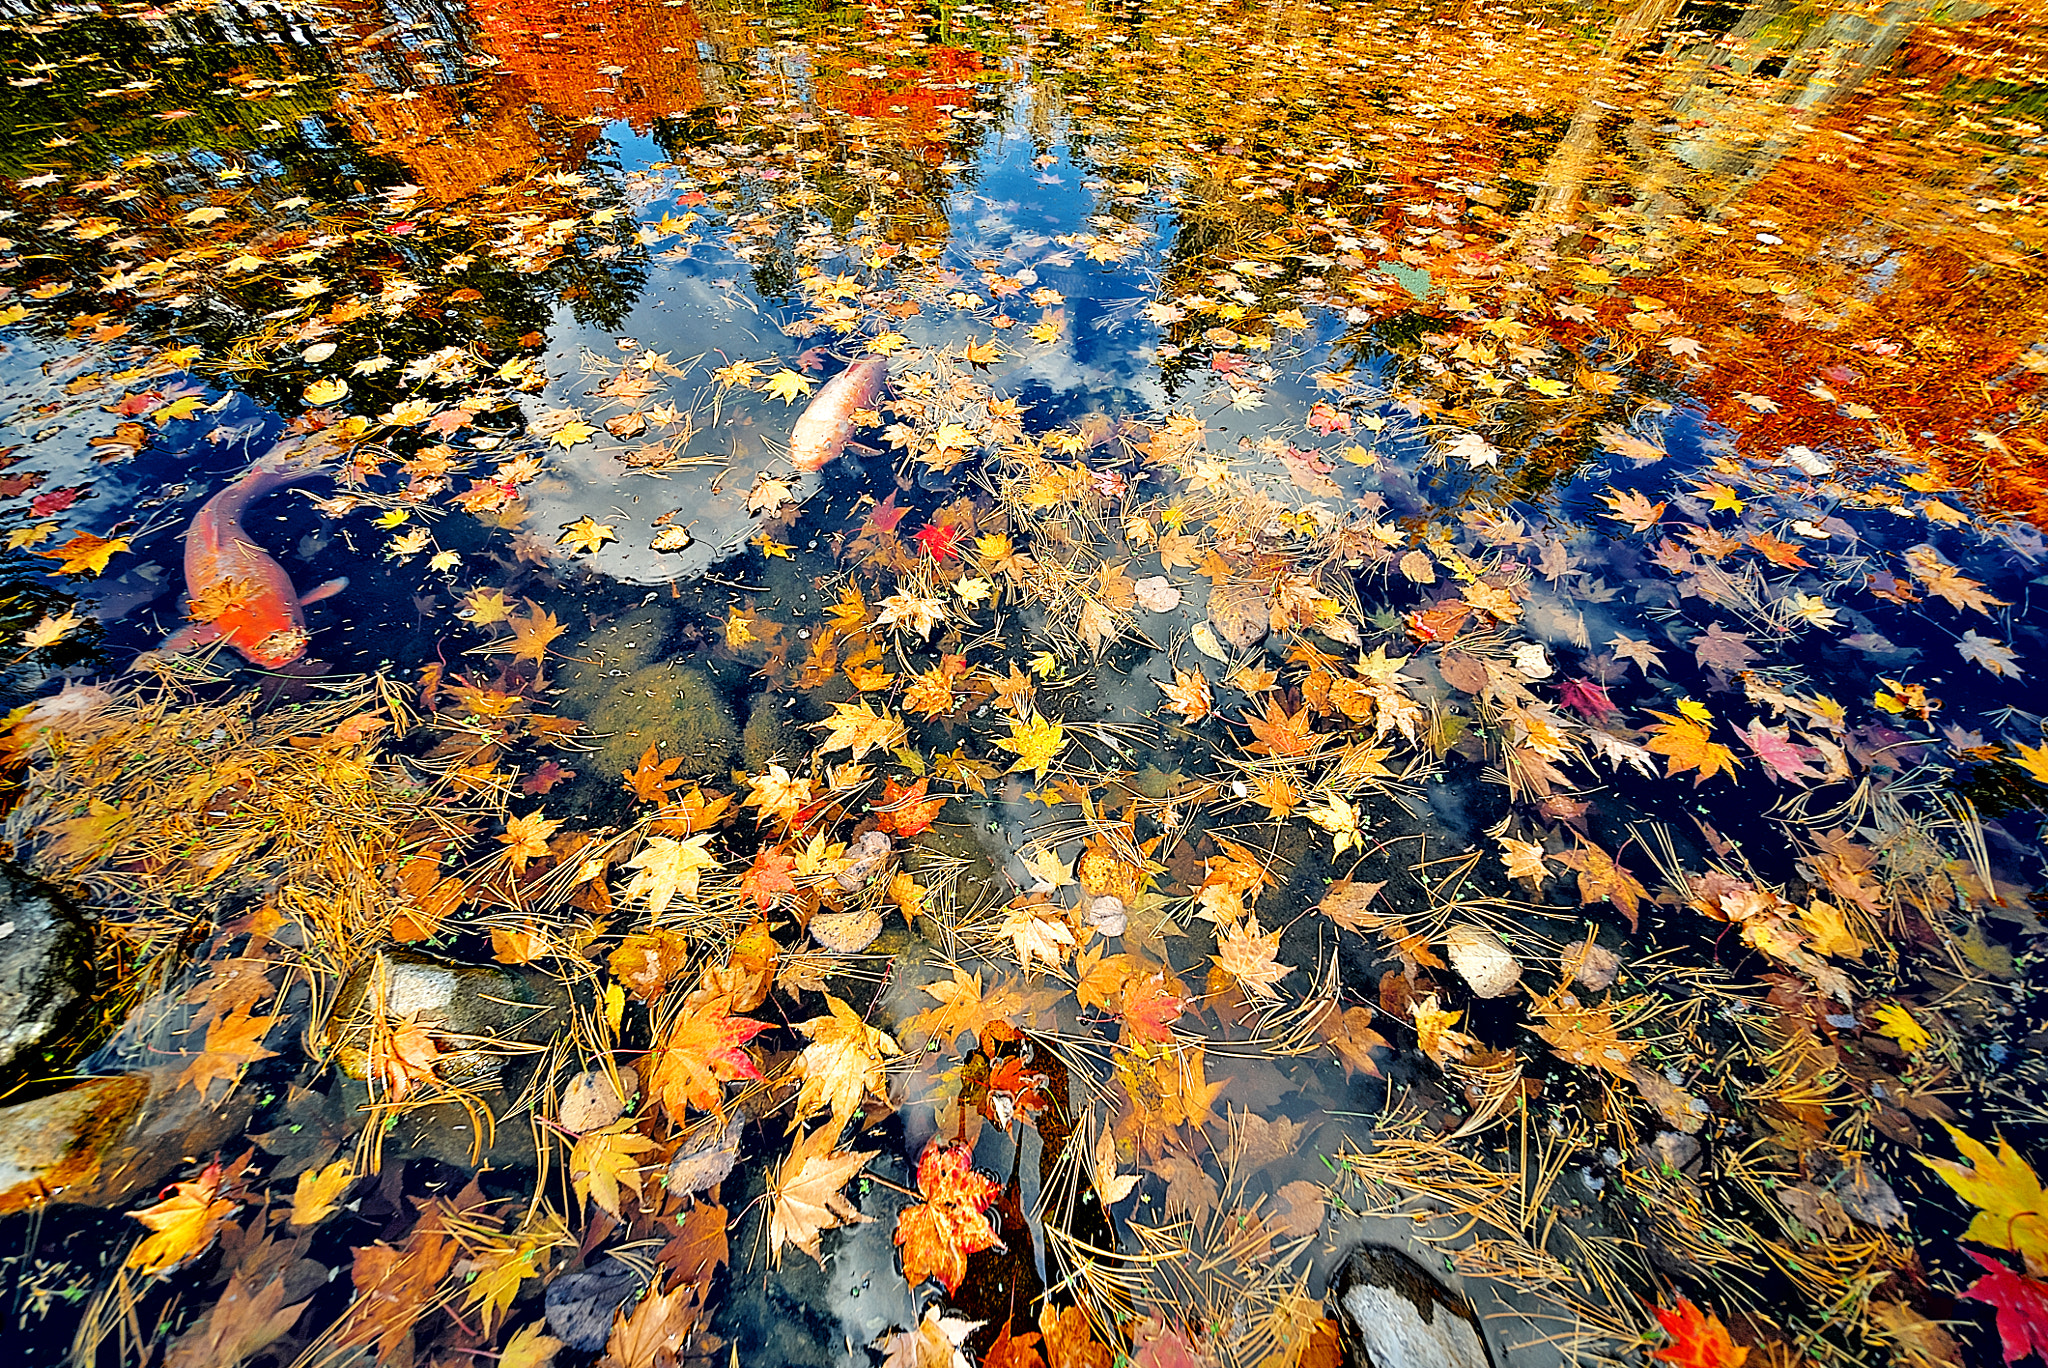 E 10mm F5.6 sample photo. Autumn carp photography